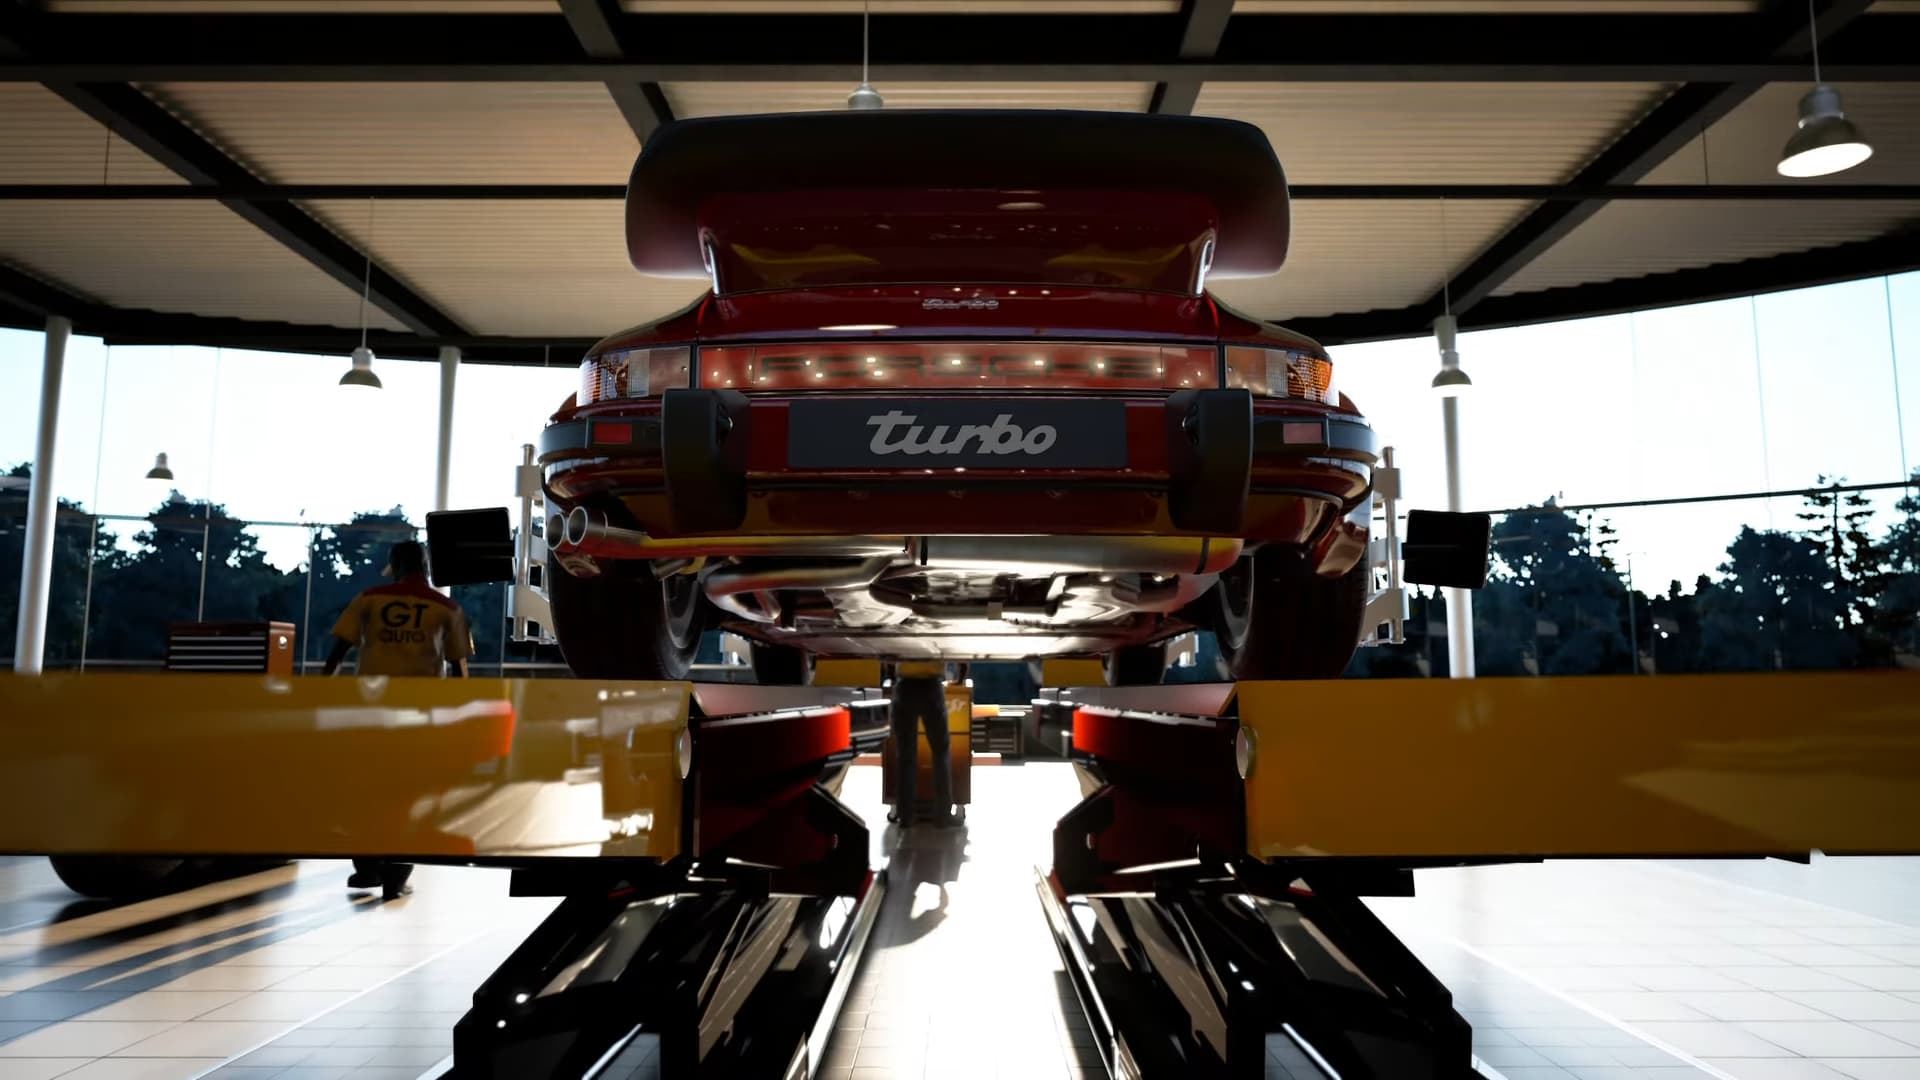 Porsche publica novo vídeo de Gran Turismo 7 com carro épico